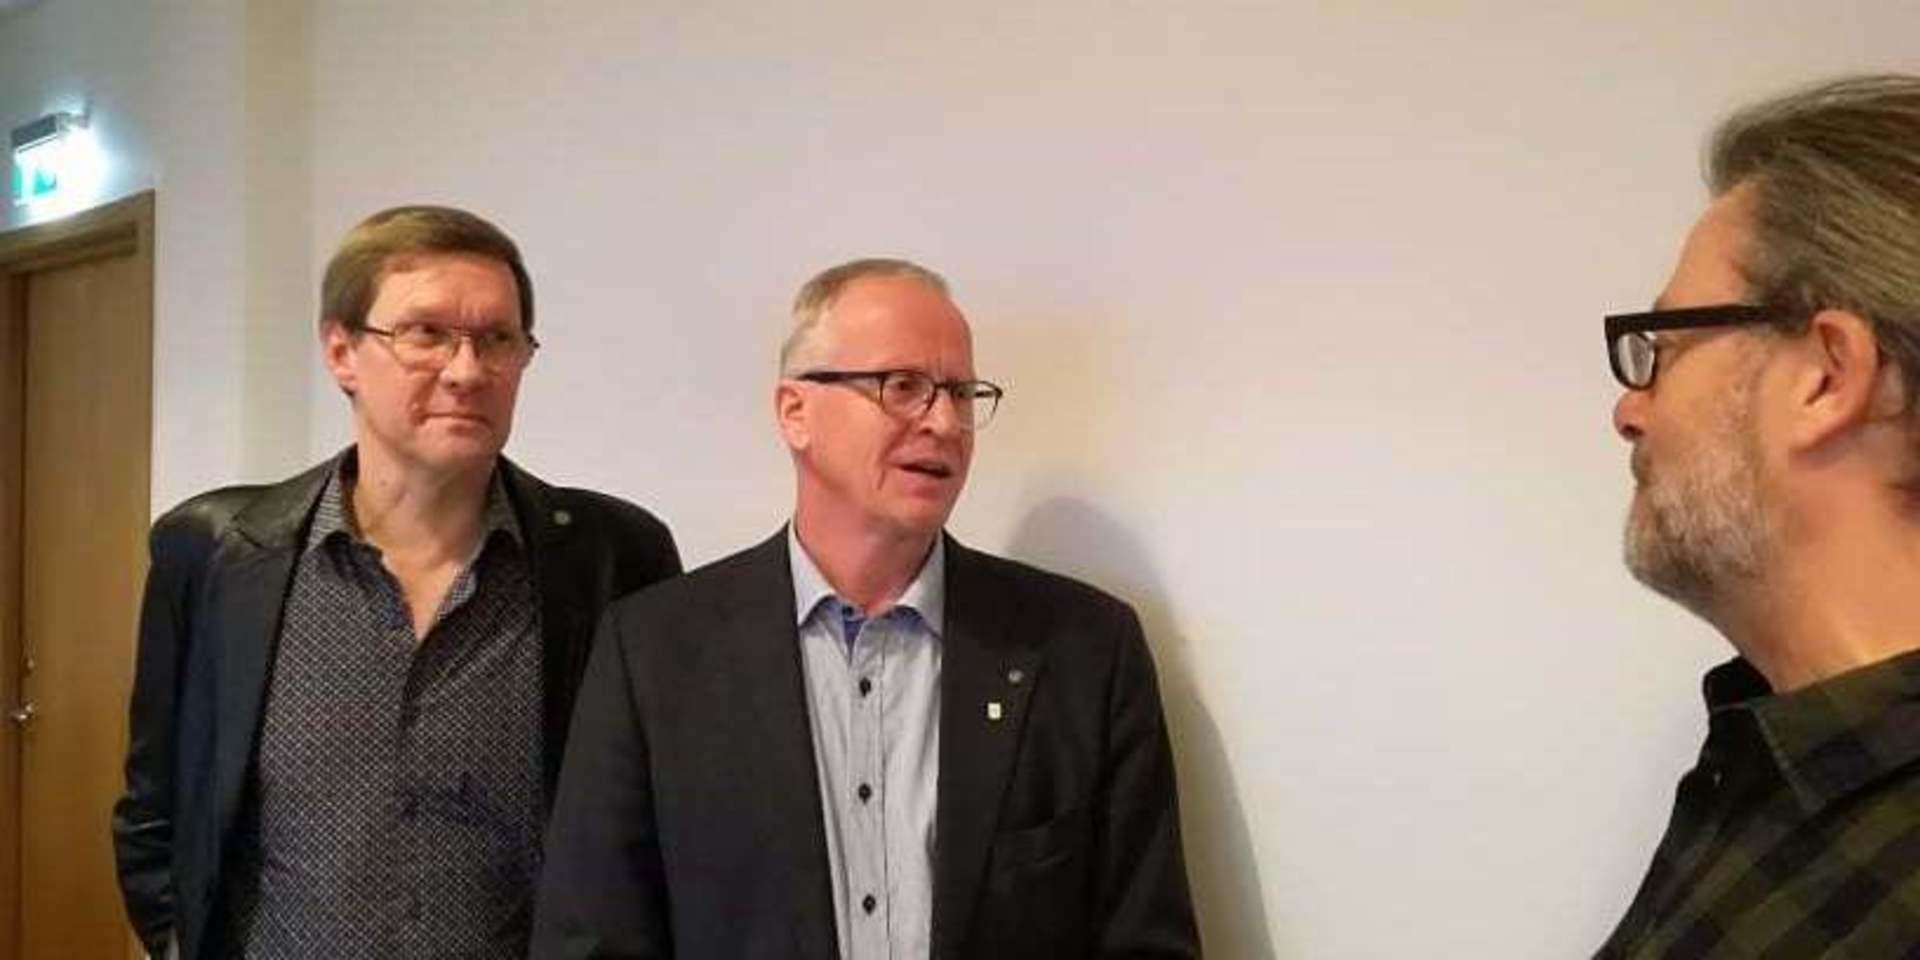 KOMMUNALRÅD. Jarmo Uusitalo (MP) och Christer Hasslebäck (UP) intervjuas av Bohusläningens reporter Sven Lundstedt.